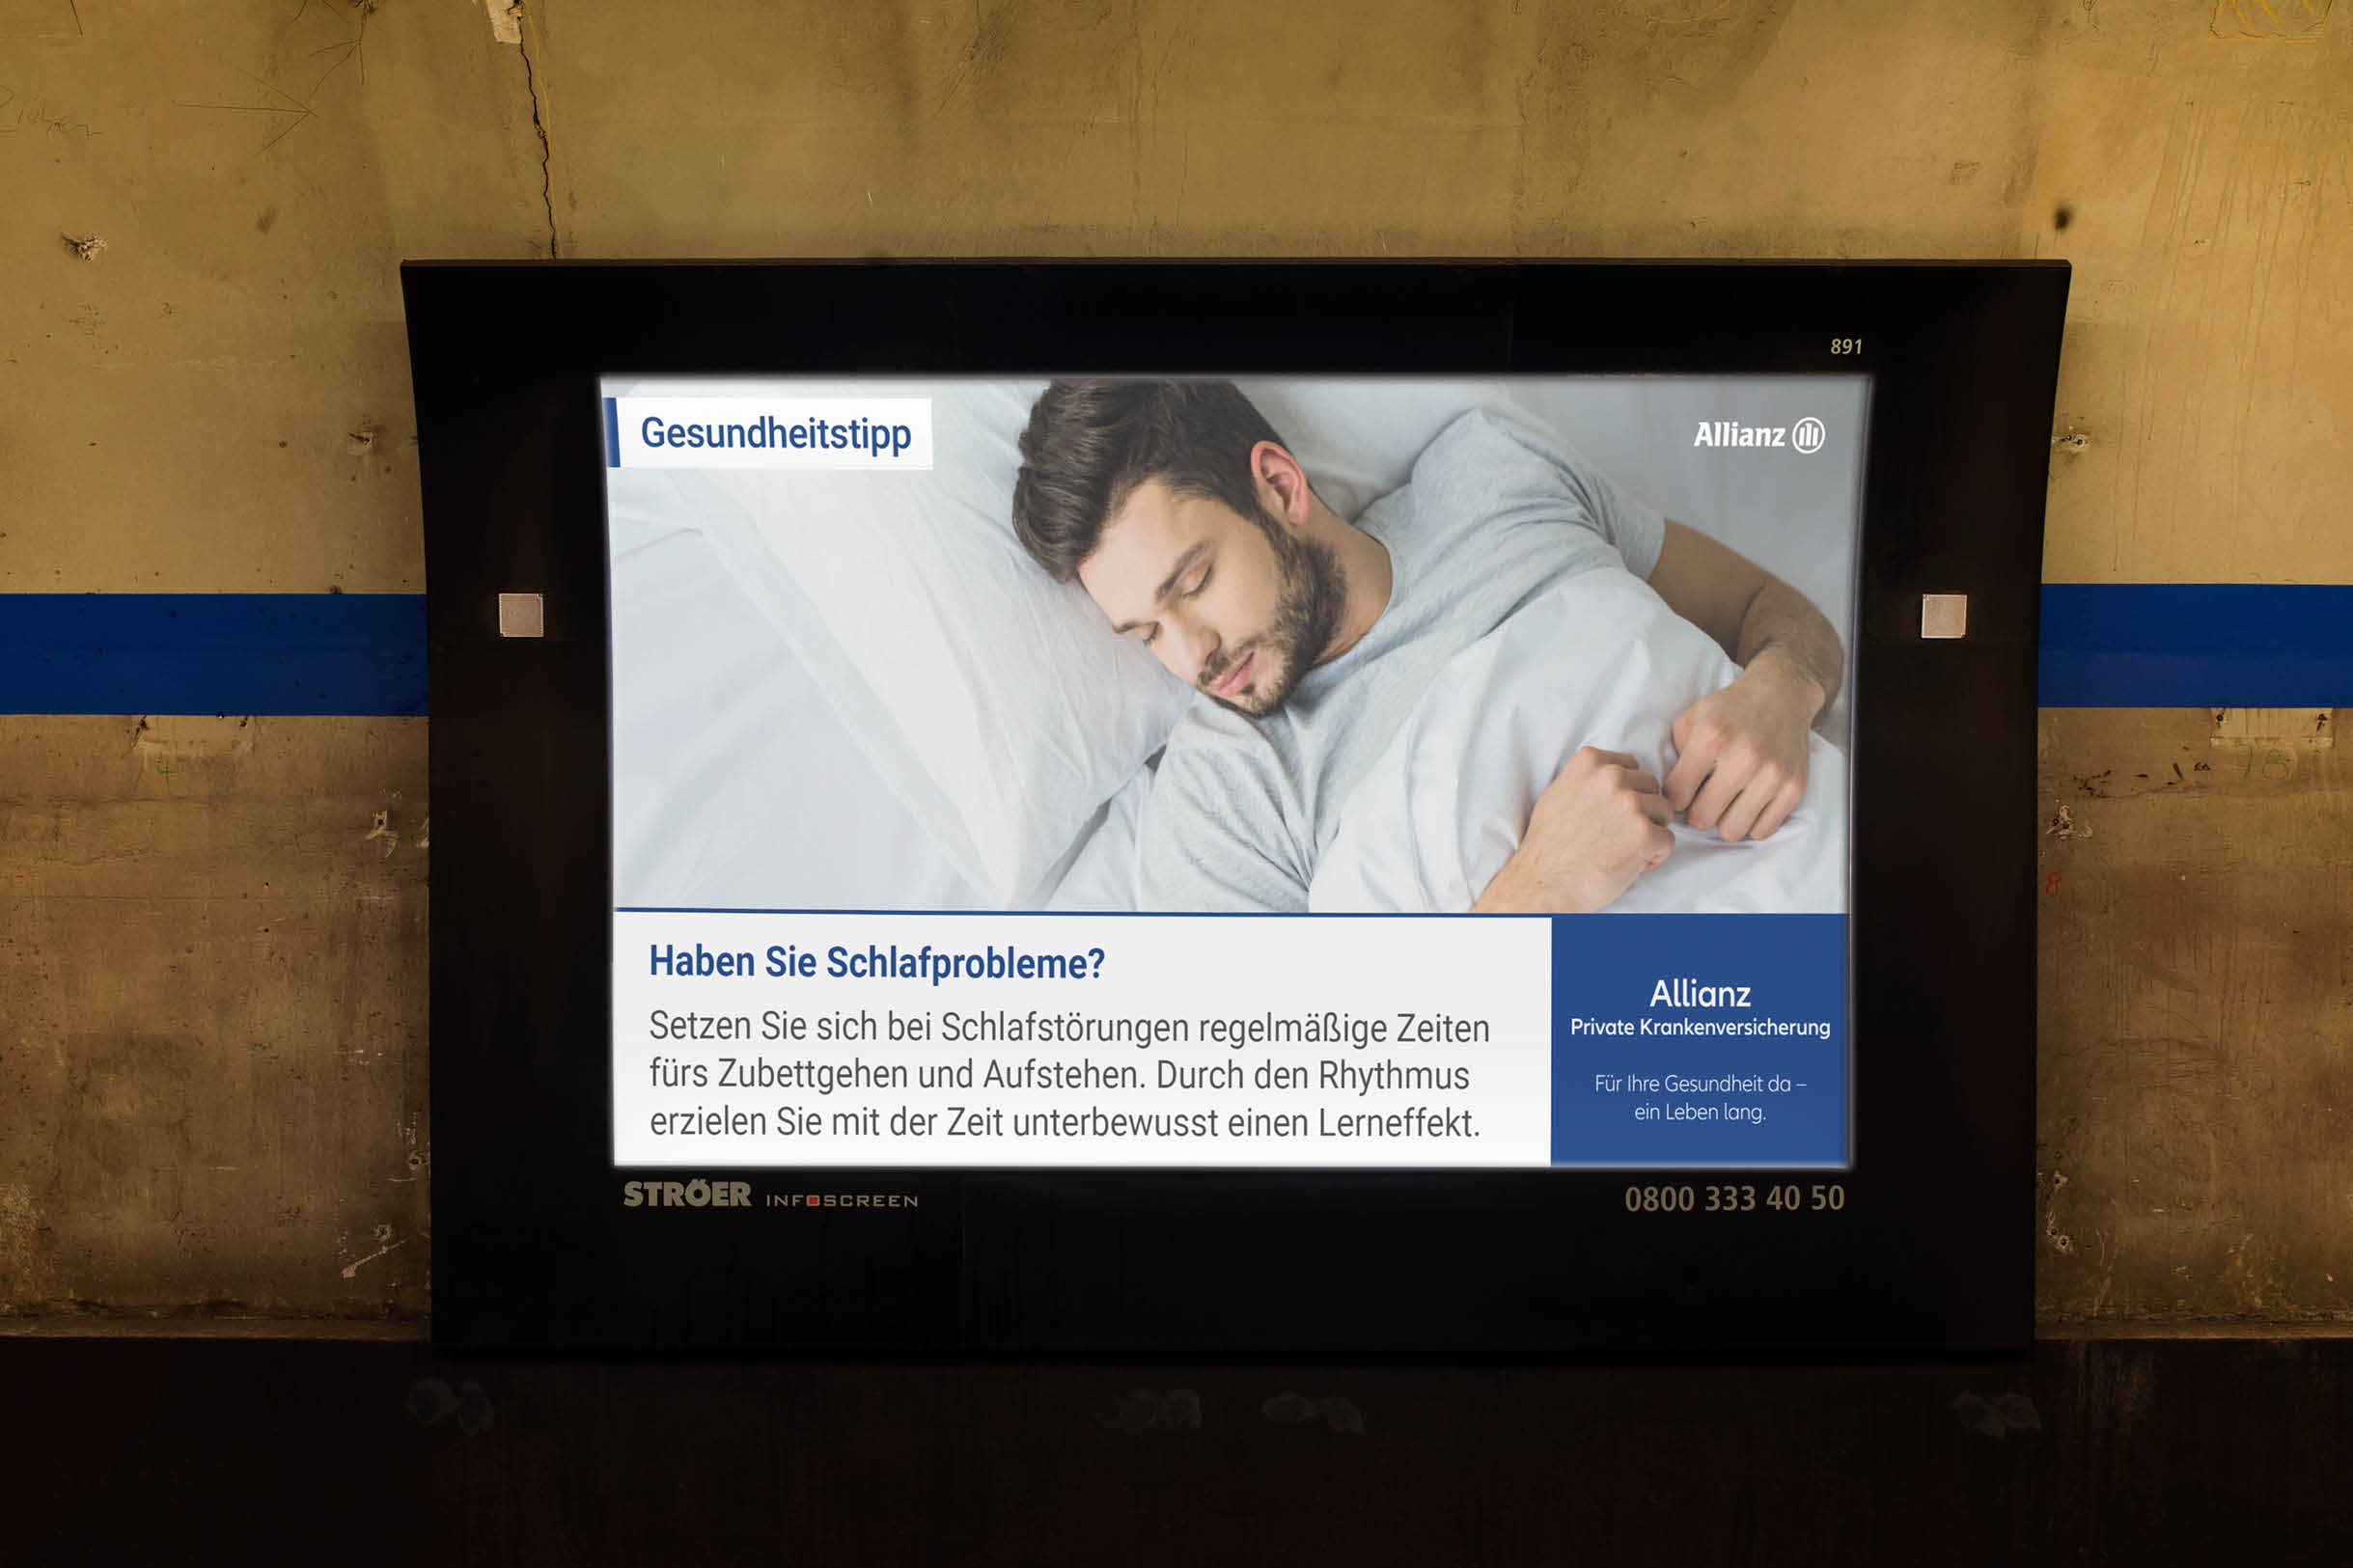 Schlafprobleme: Anzeige der Allianz in der U-Bahn in München